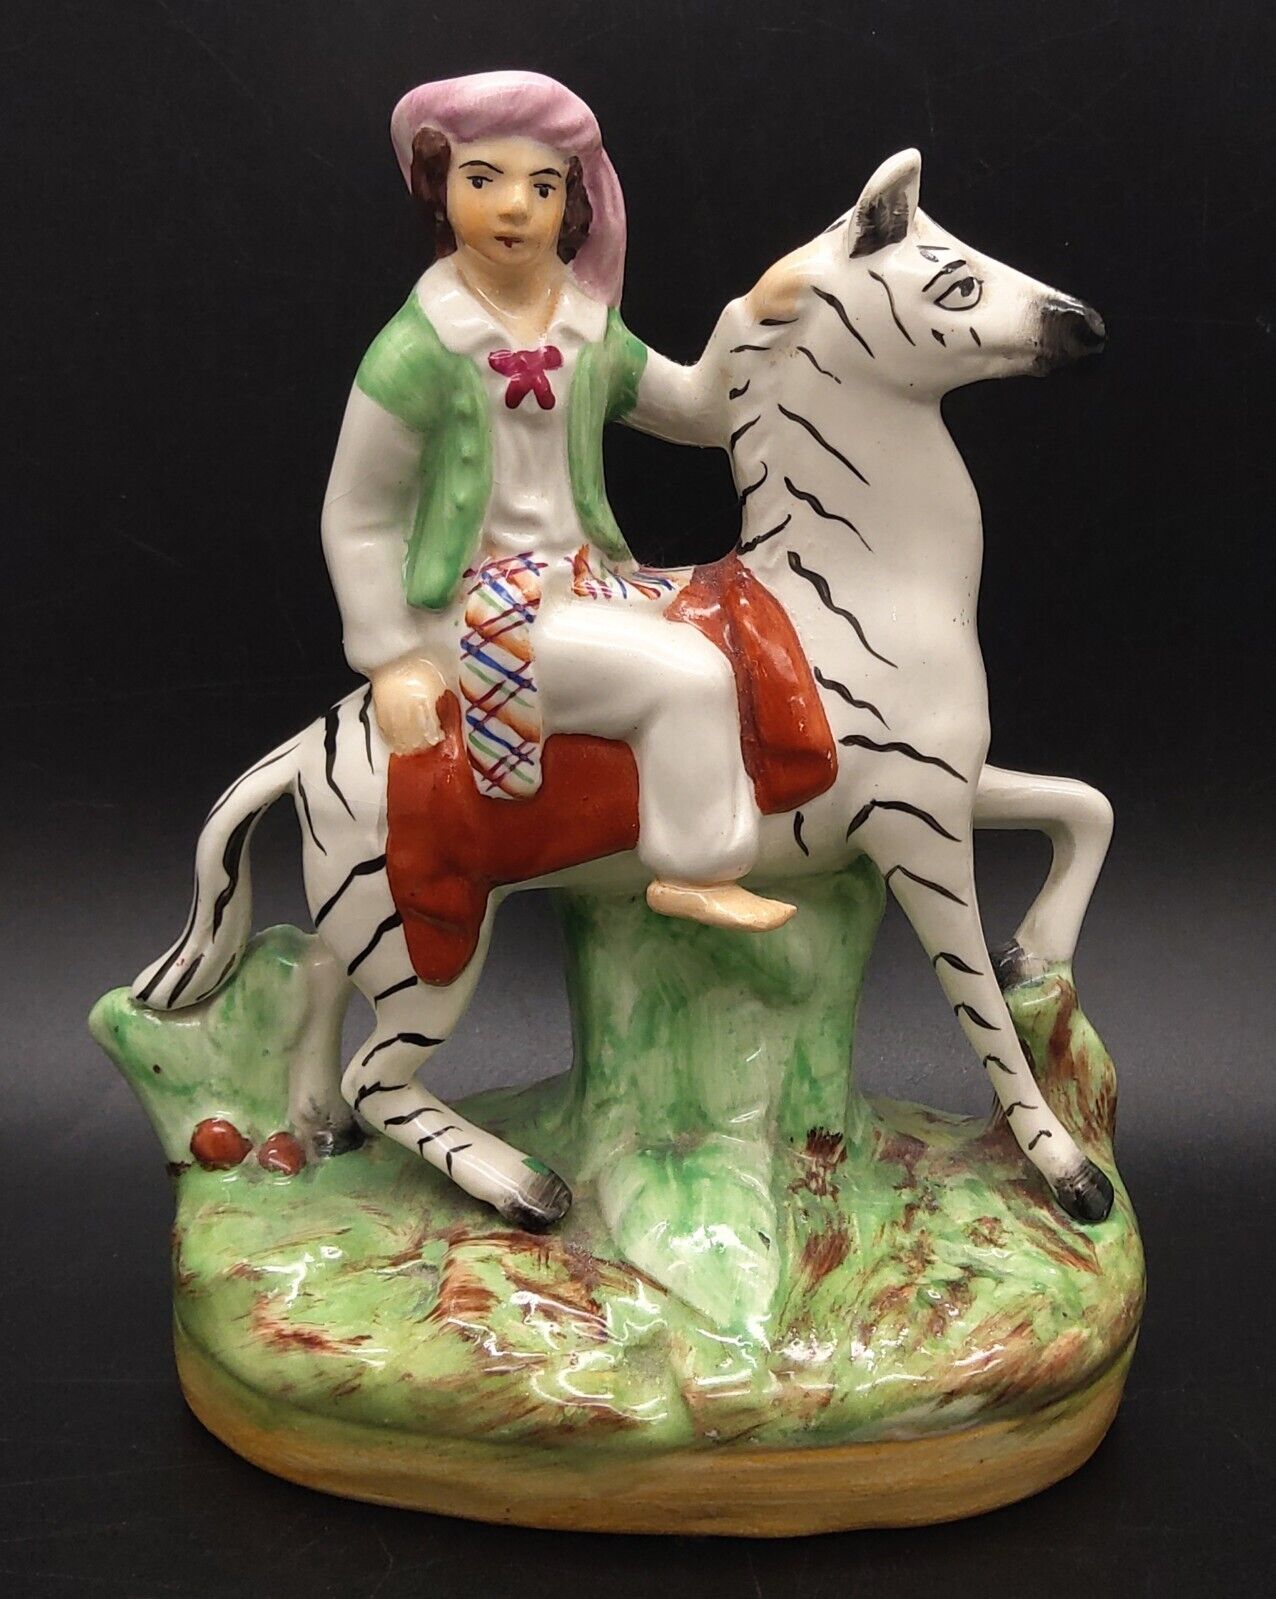 RARE Antique Old Staffordshire Ware England Figurine Boy Riding Zebra